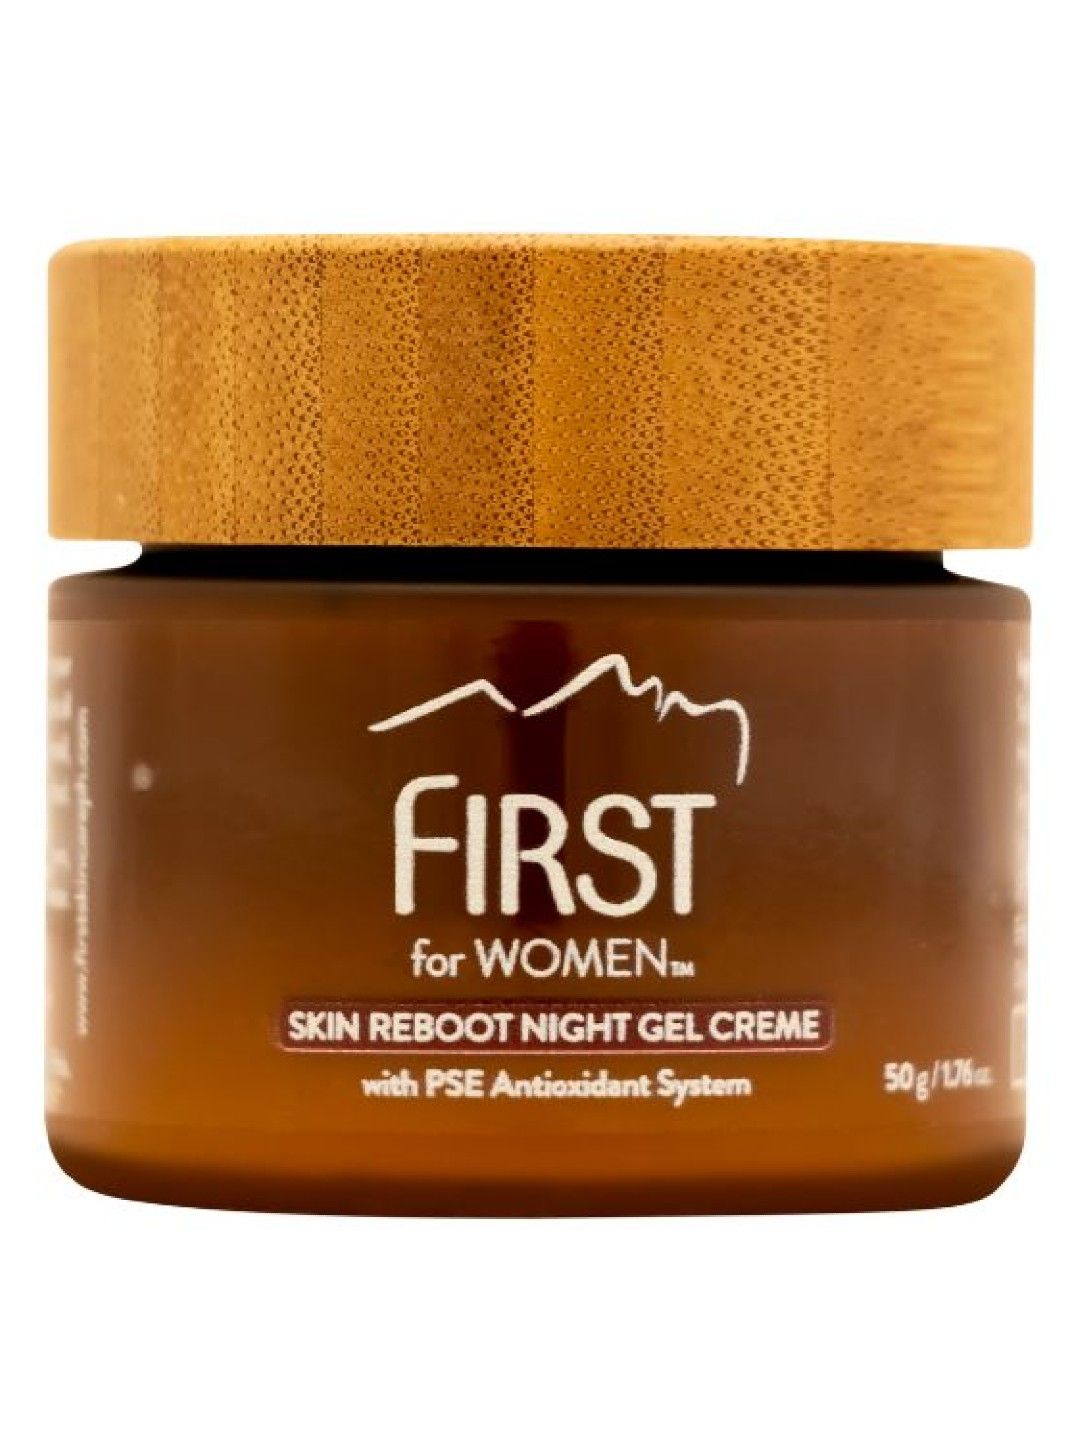 FIRST for Women Skin Reboot Night Gel Creme (50g)